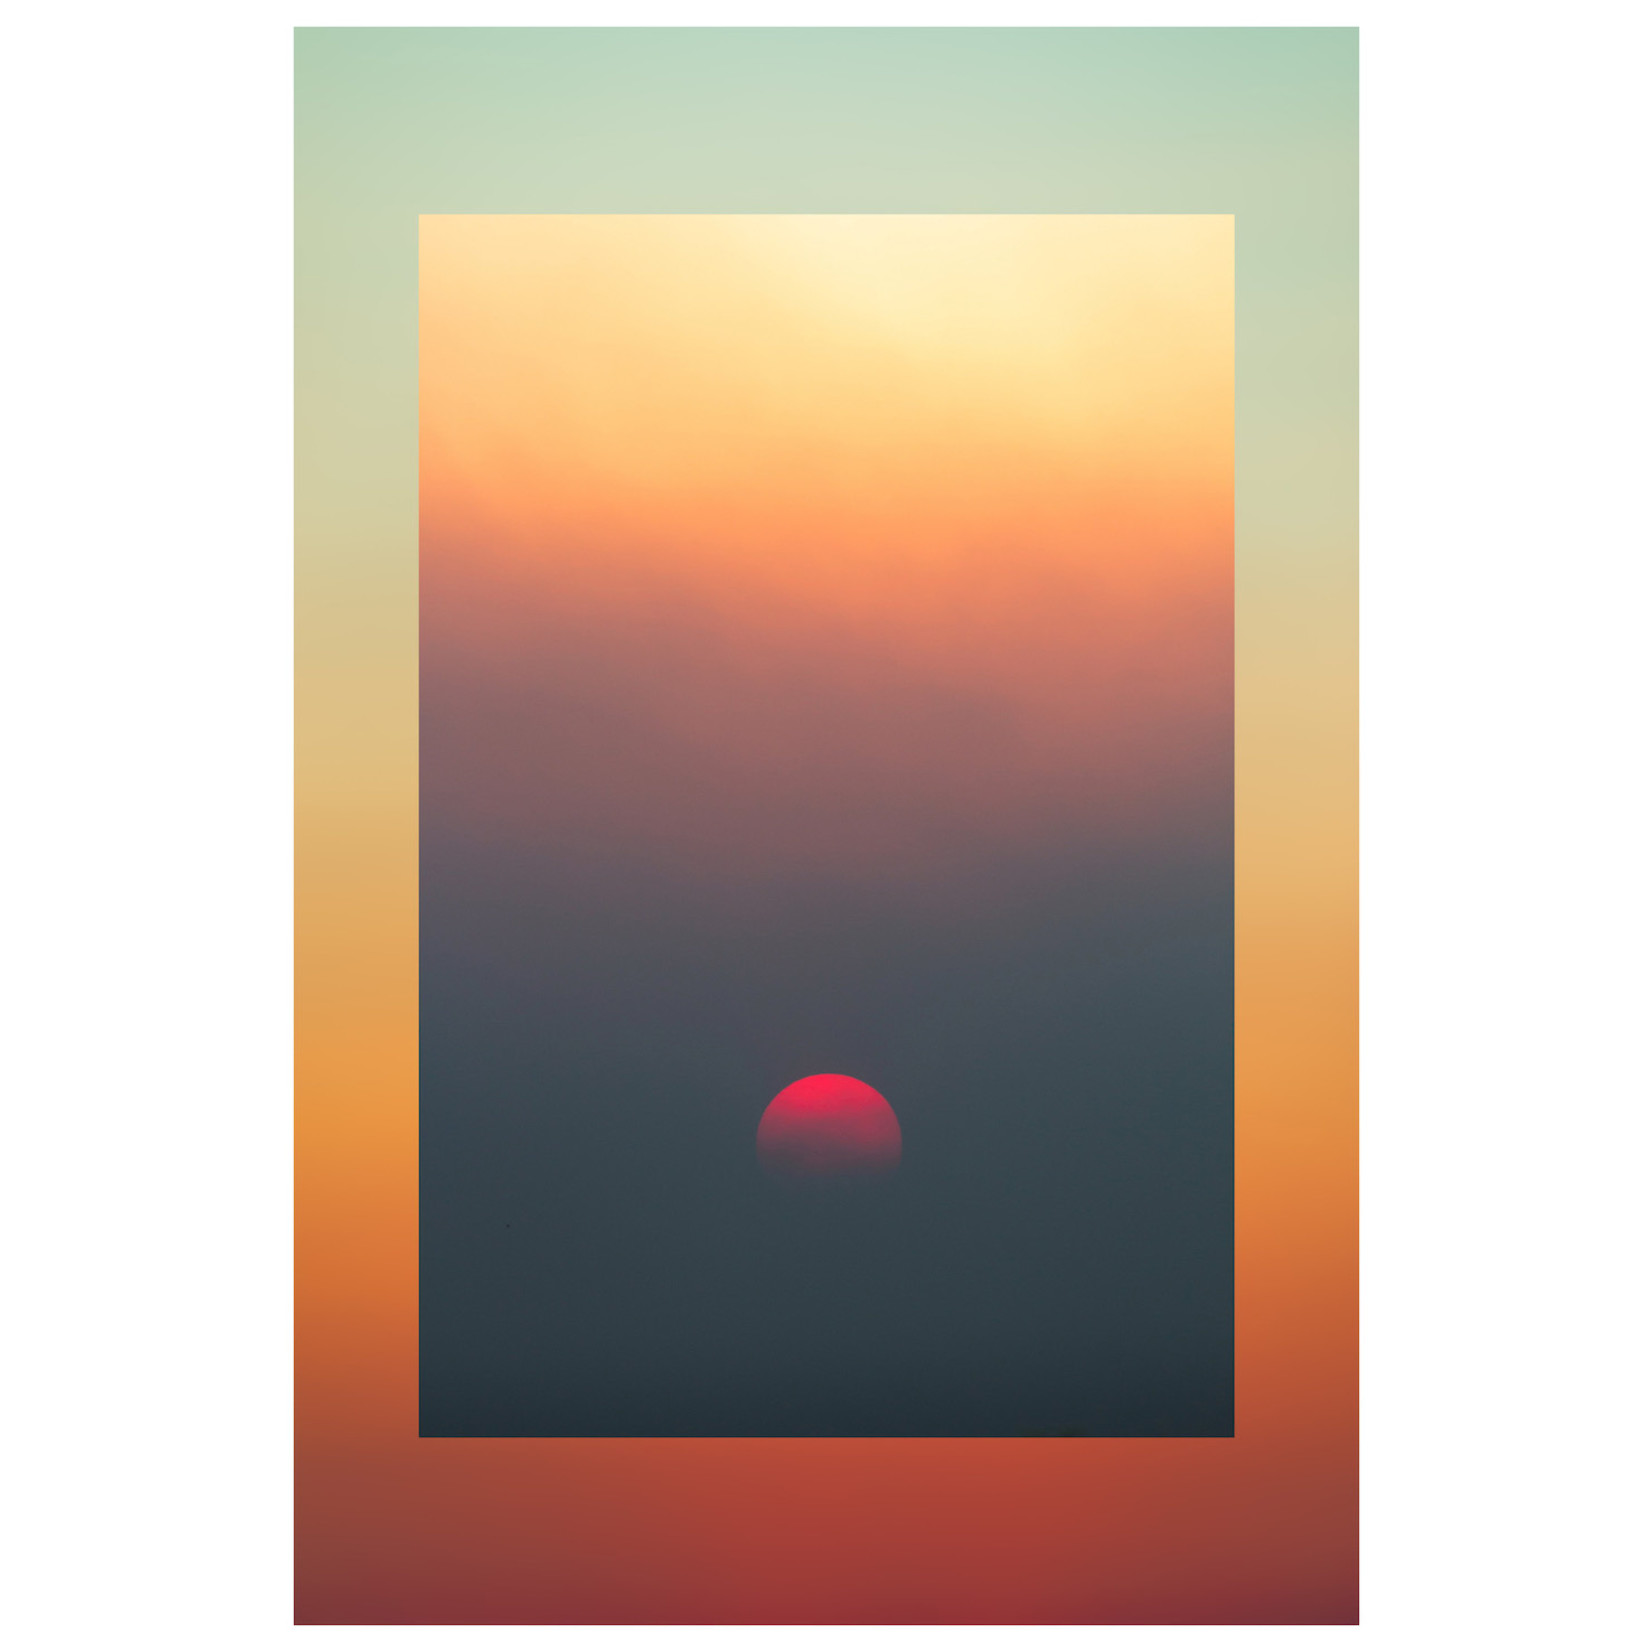 Fine Art Print on Rag Paper Red Moon Sunset by Francesco Alessandrini